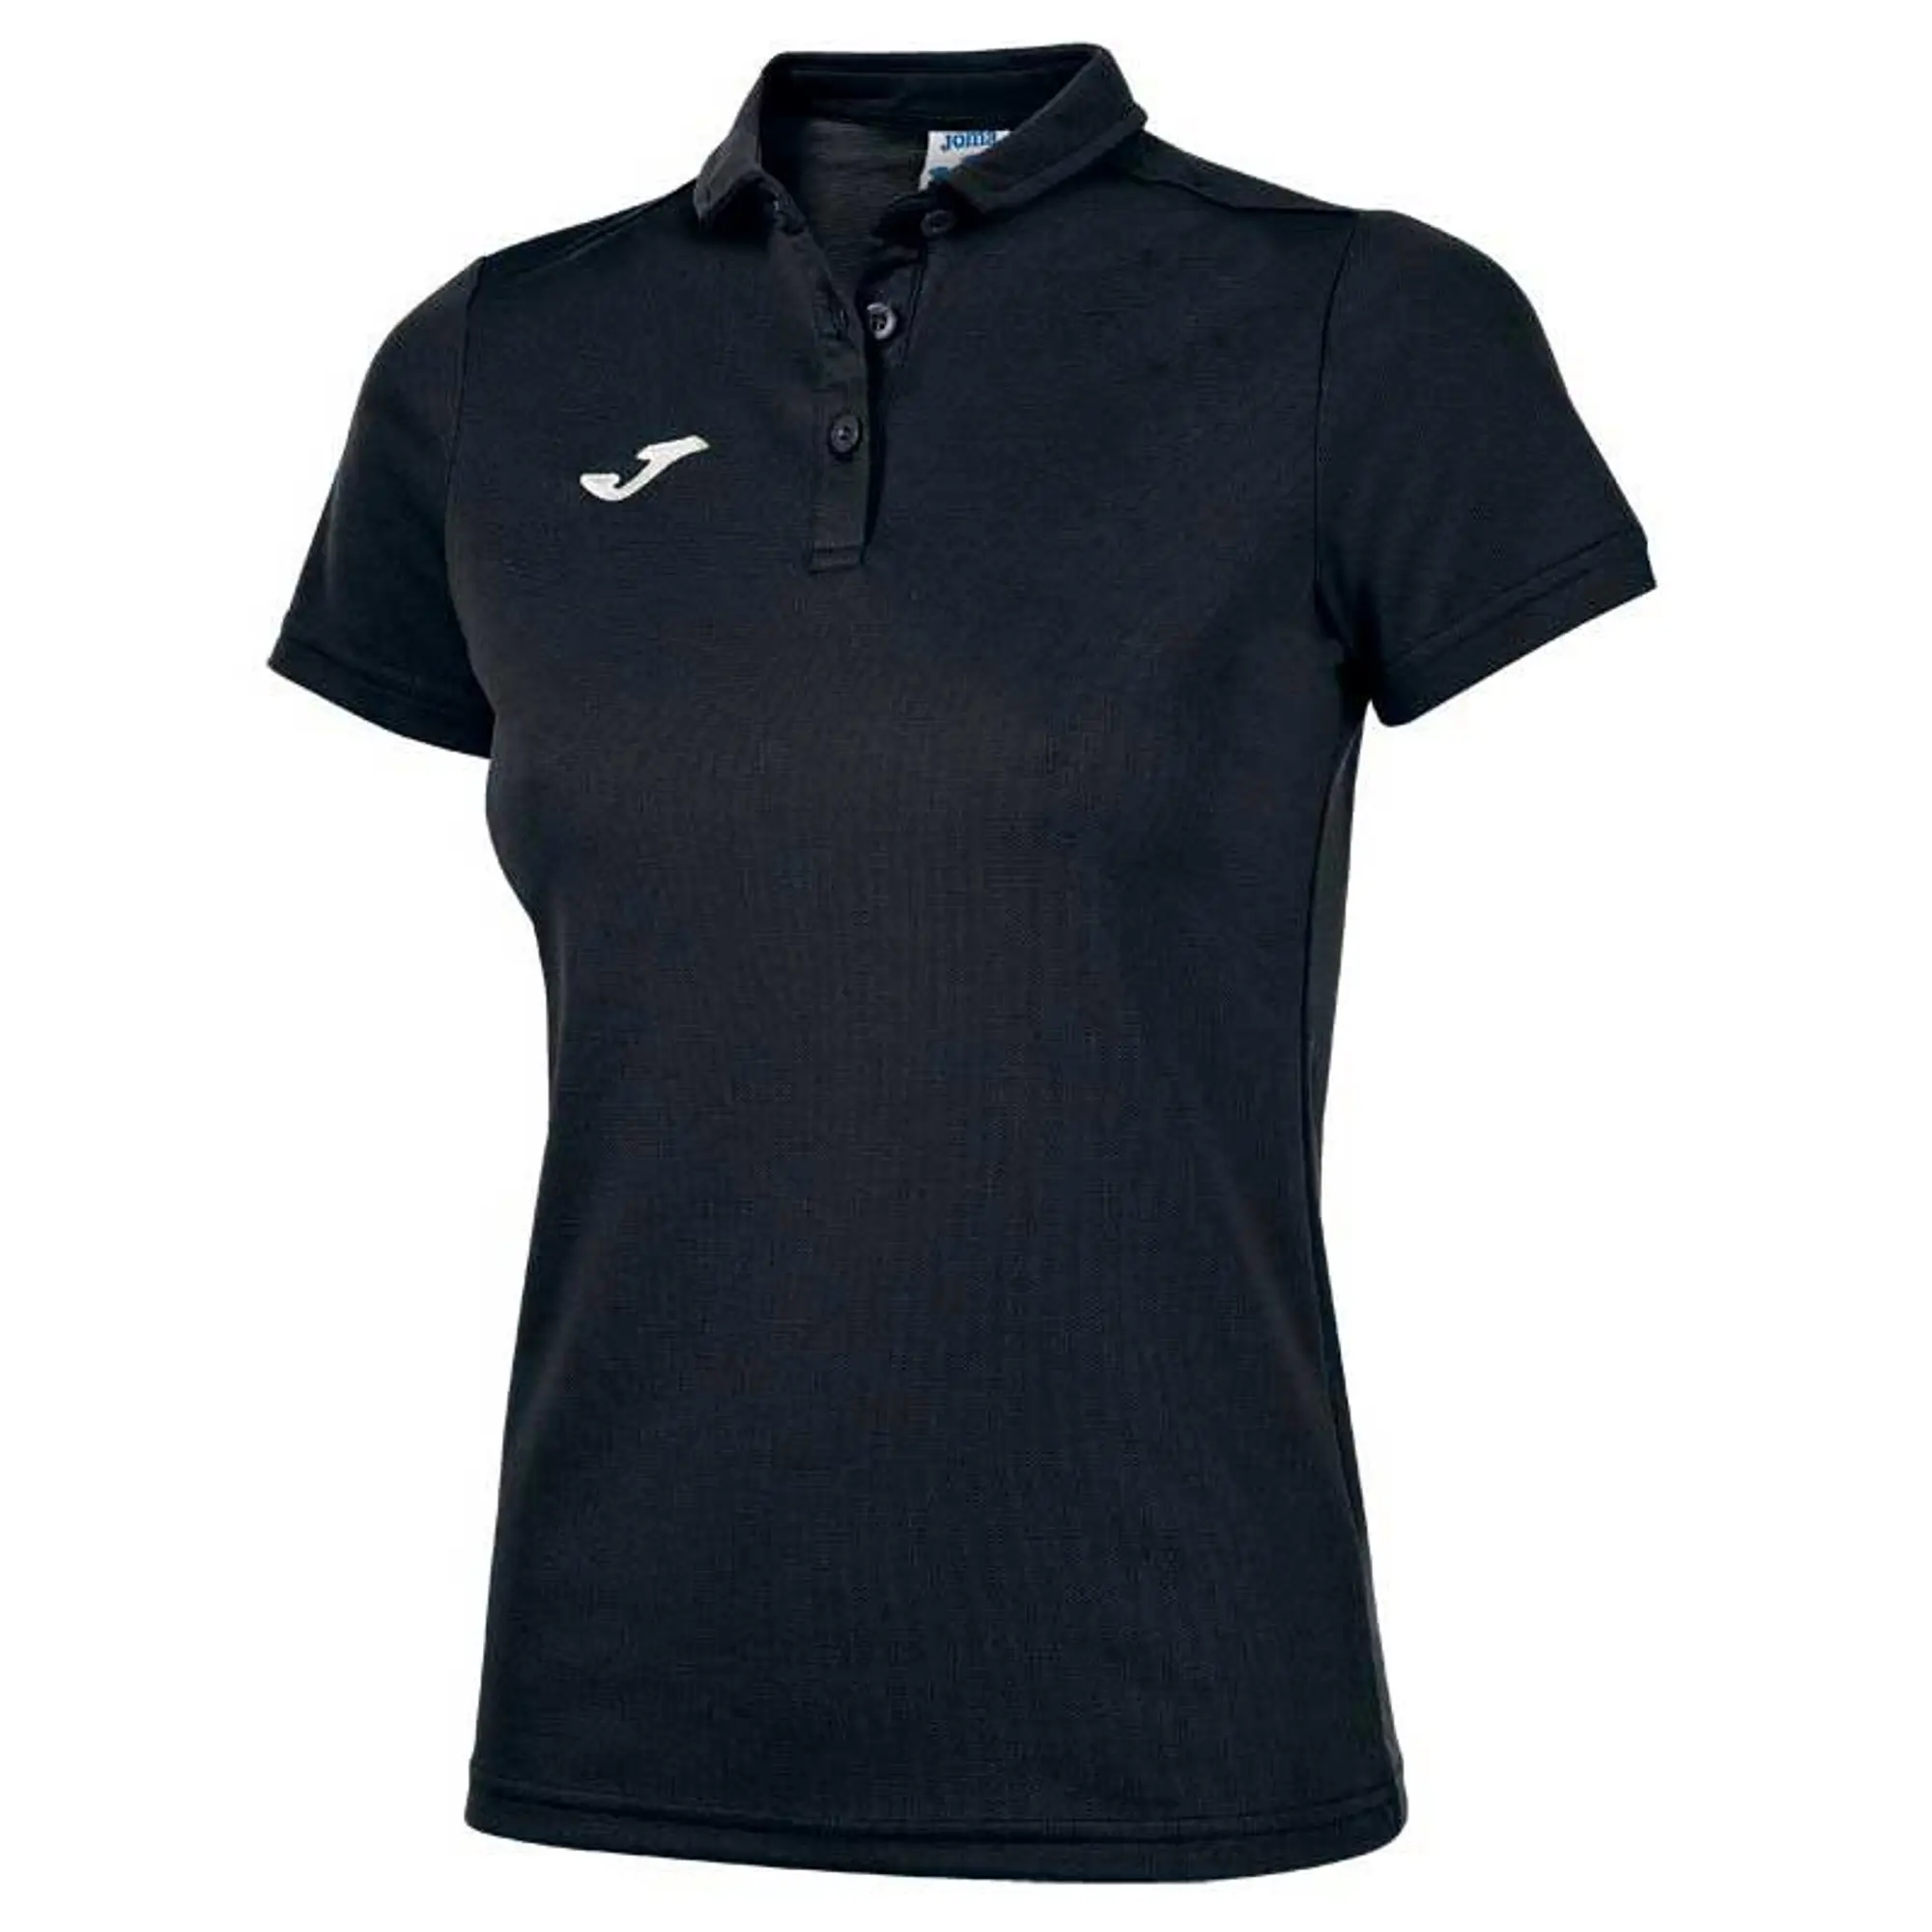 Joma Hobby Short Sleeve Polo Shirt  - Black